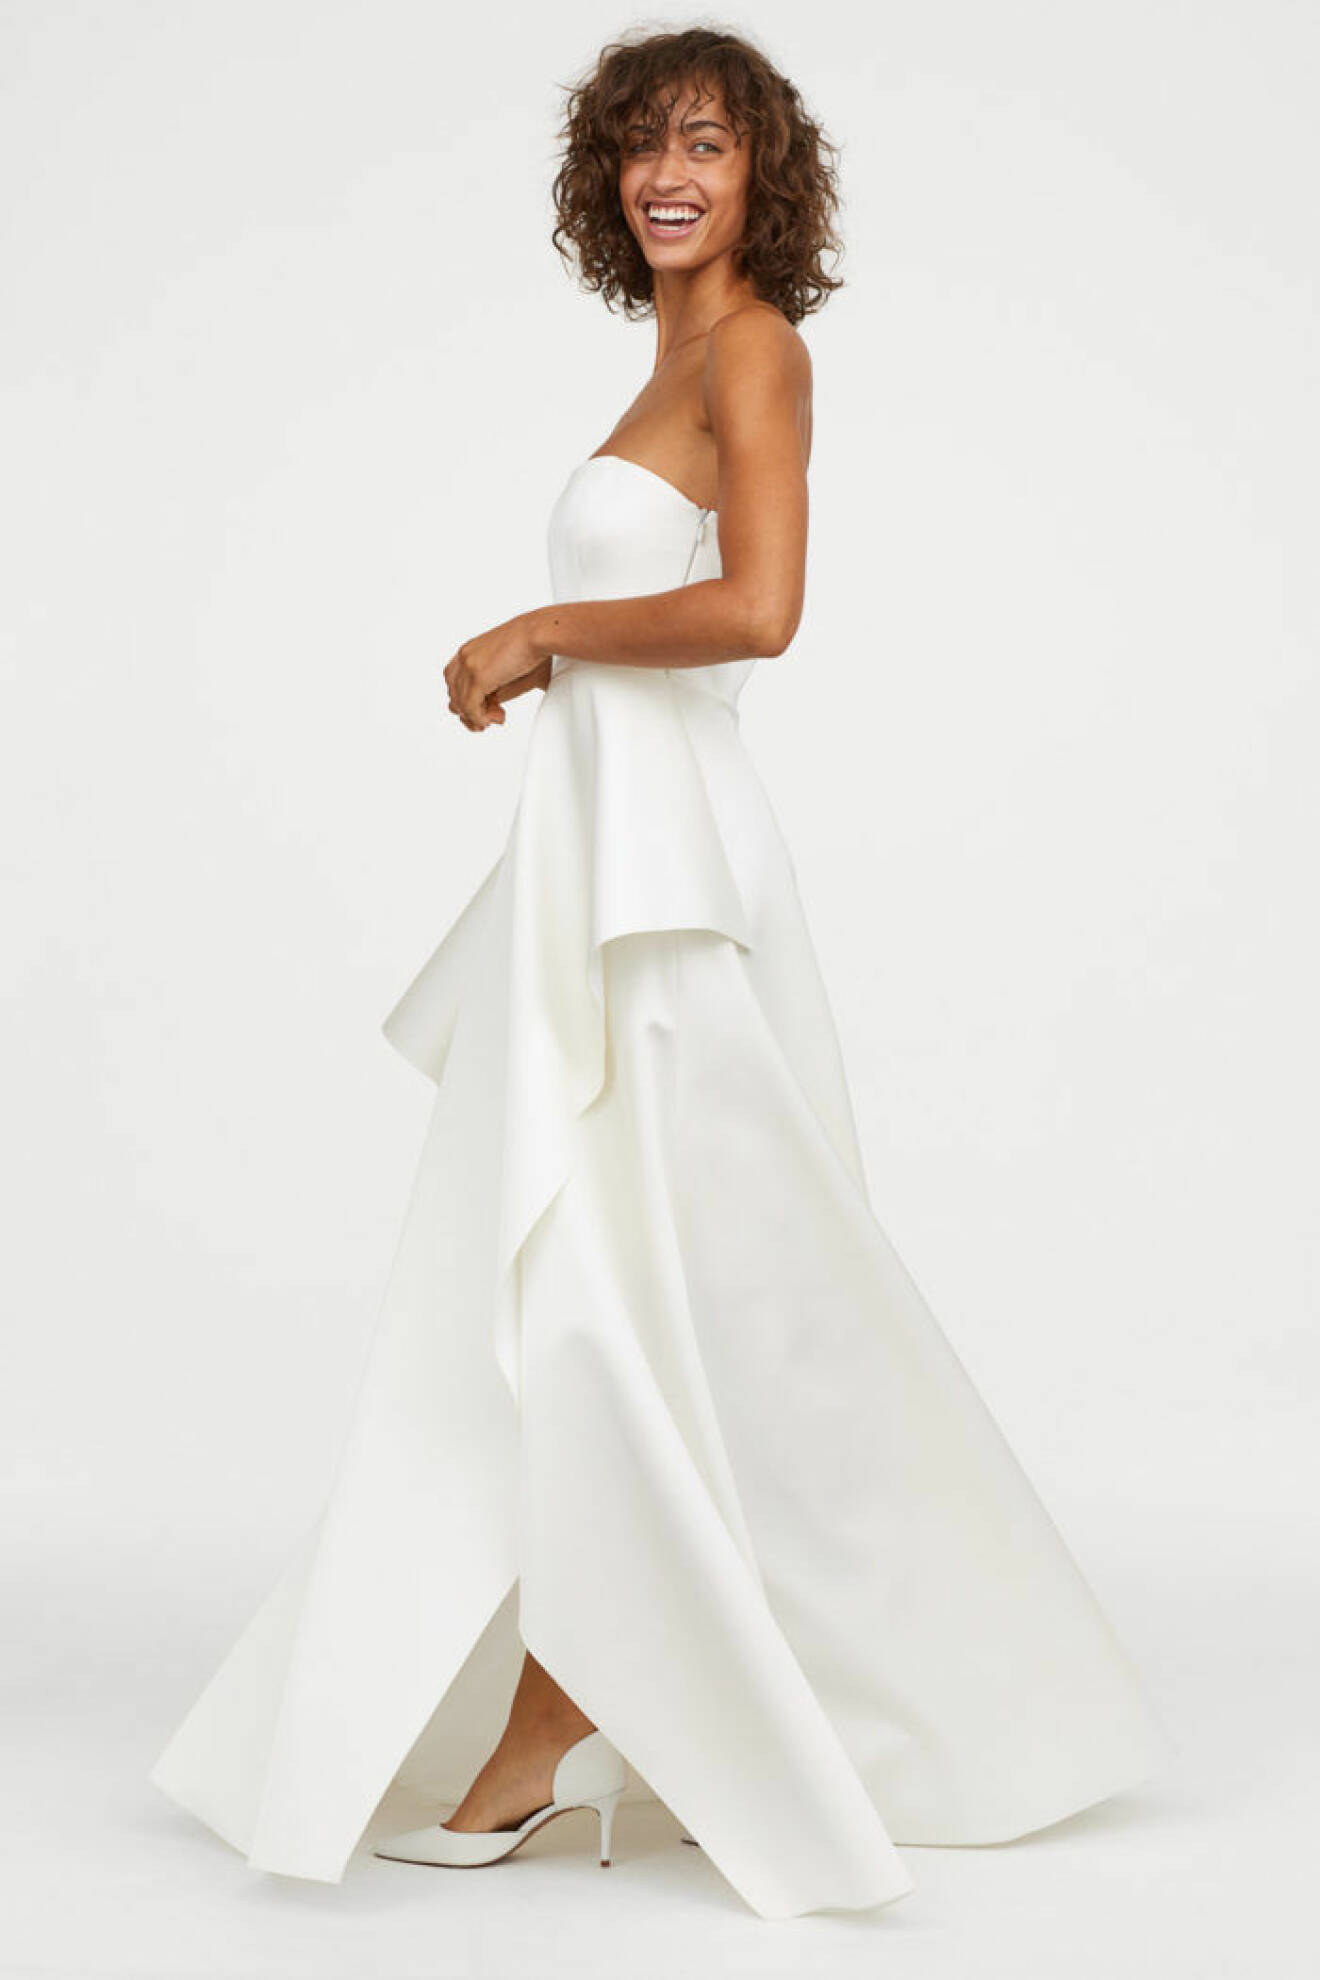 H&M släpper brudkollektion, axelbandslösklänning från sidan.